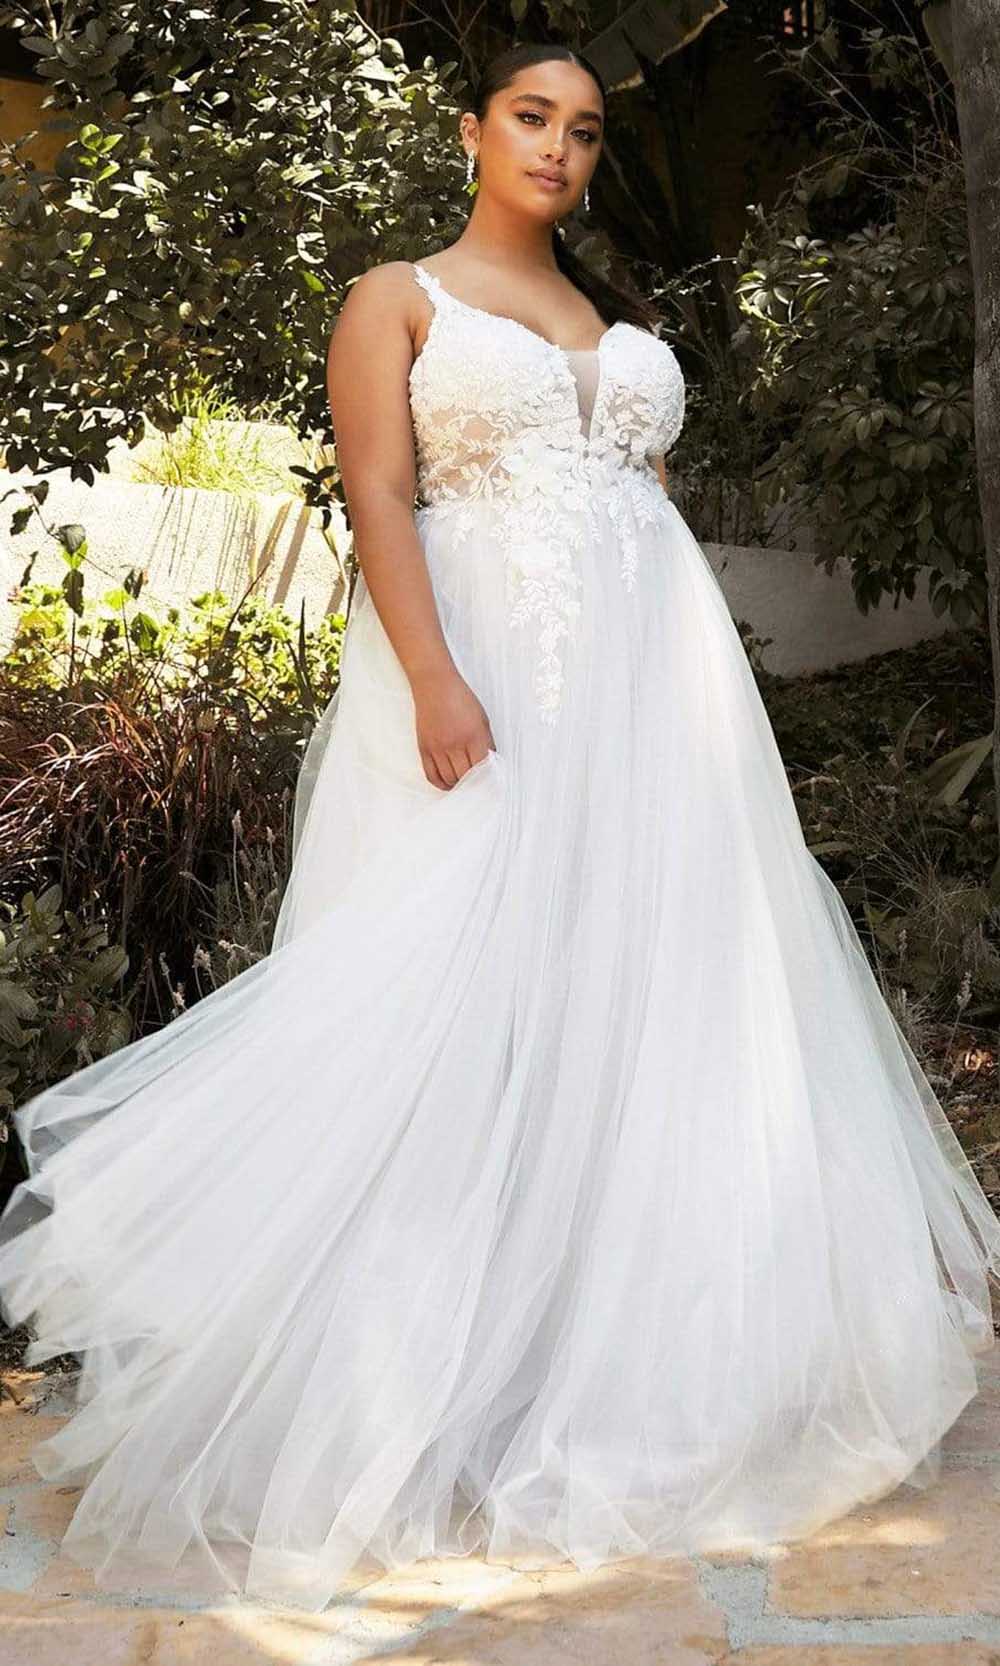 Cinderella Divine Bridal CB072W In White